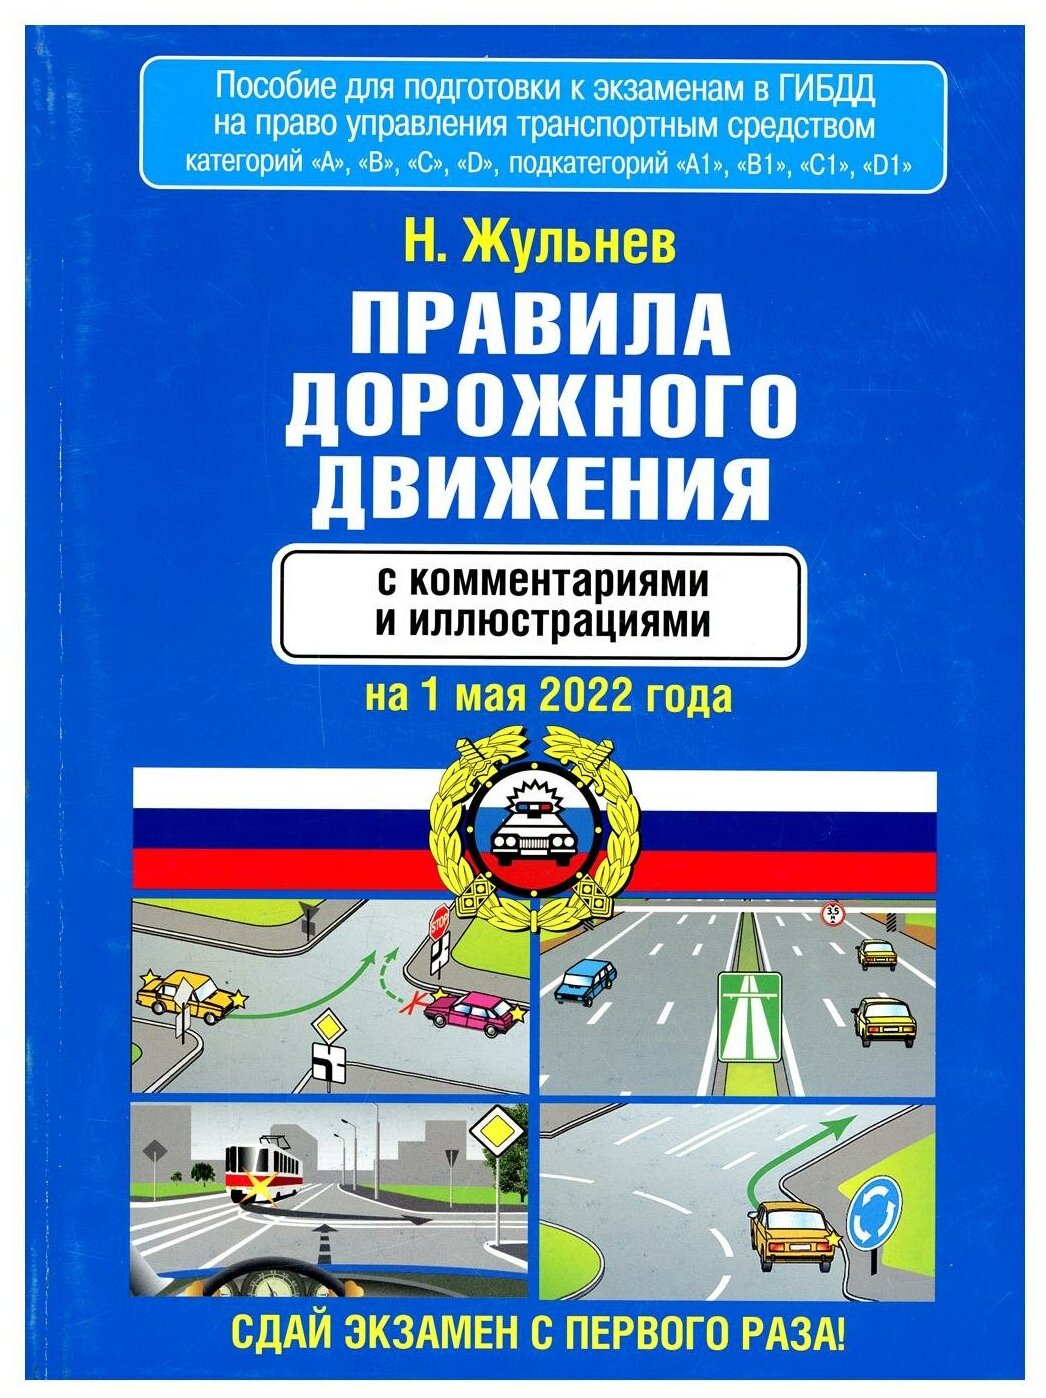 Правила дорожного движения с комментариями и иллюстрациями на 1 мая 2022 года - фото №1